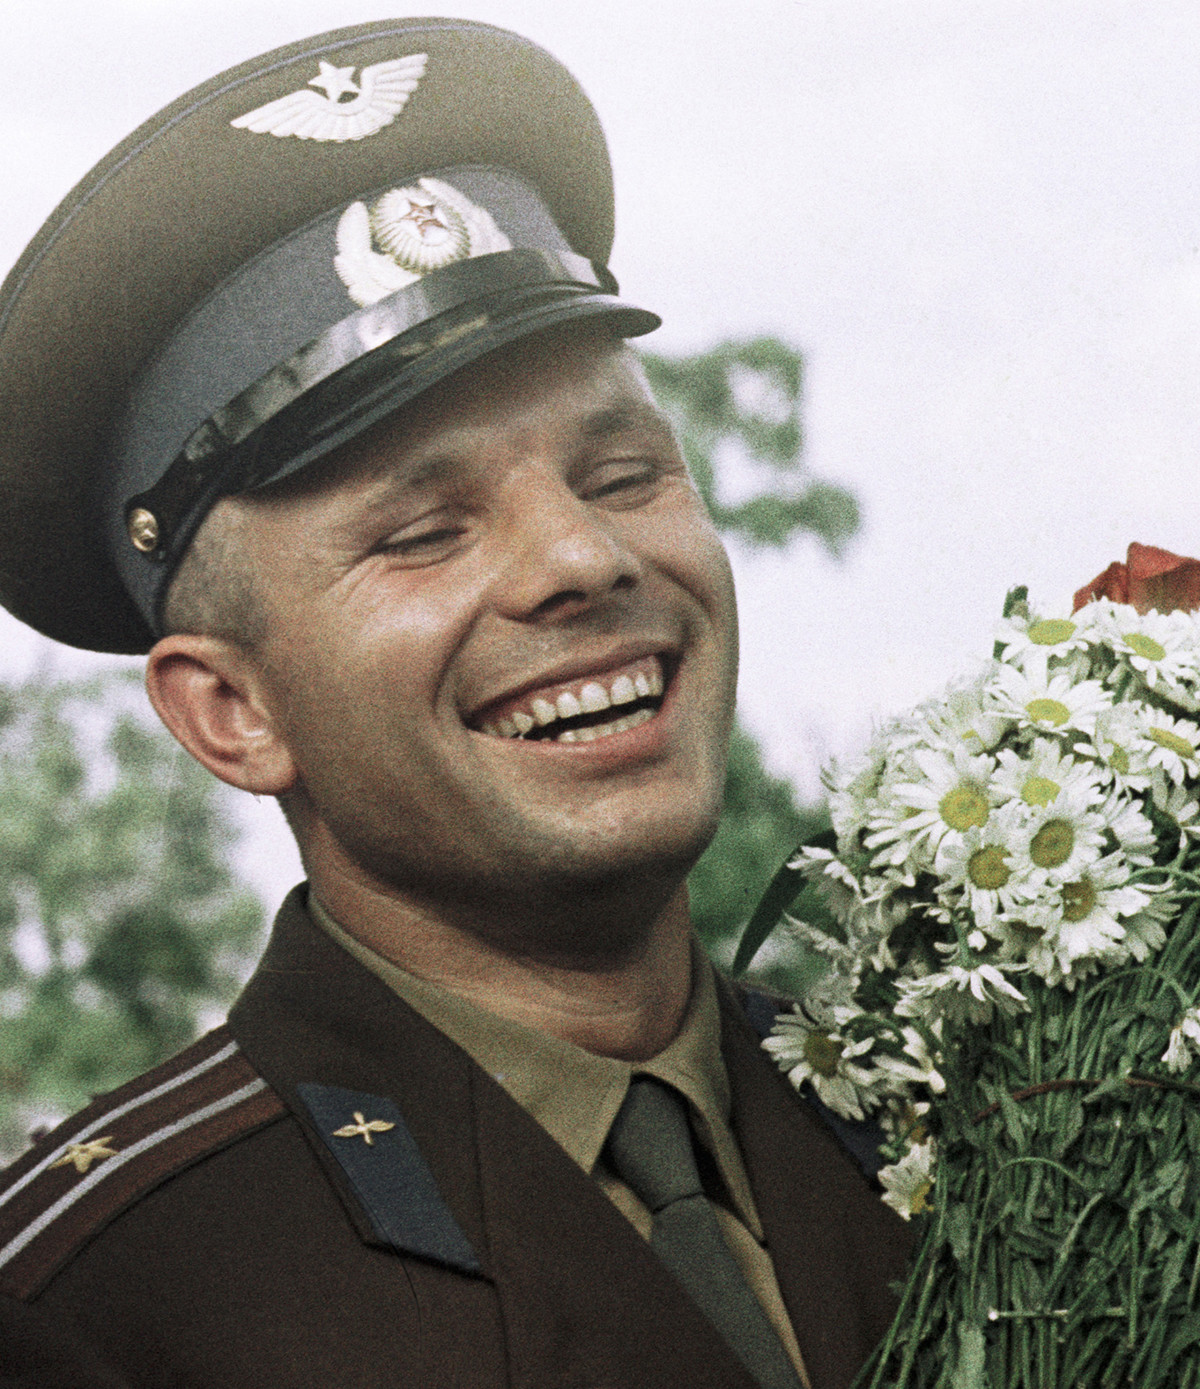 Il cosmonauta sovietico Yurij Gagarin